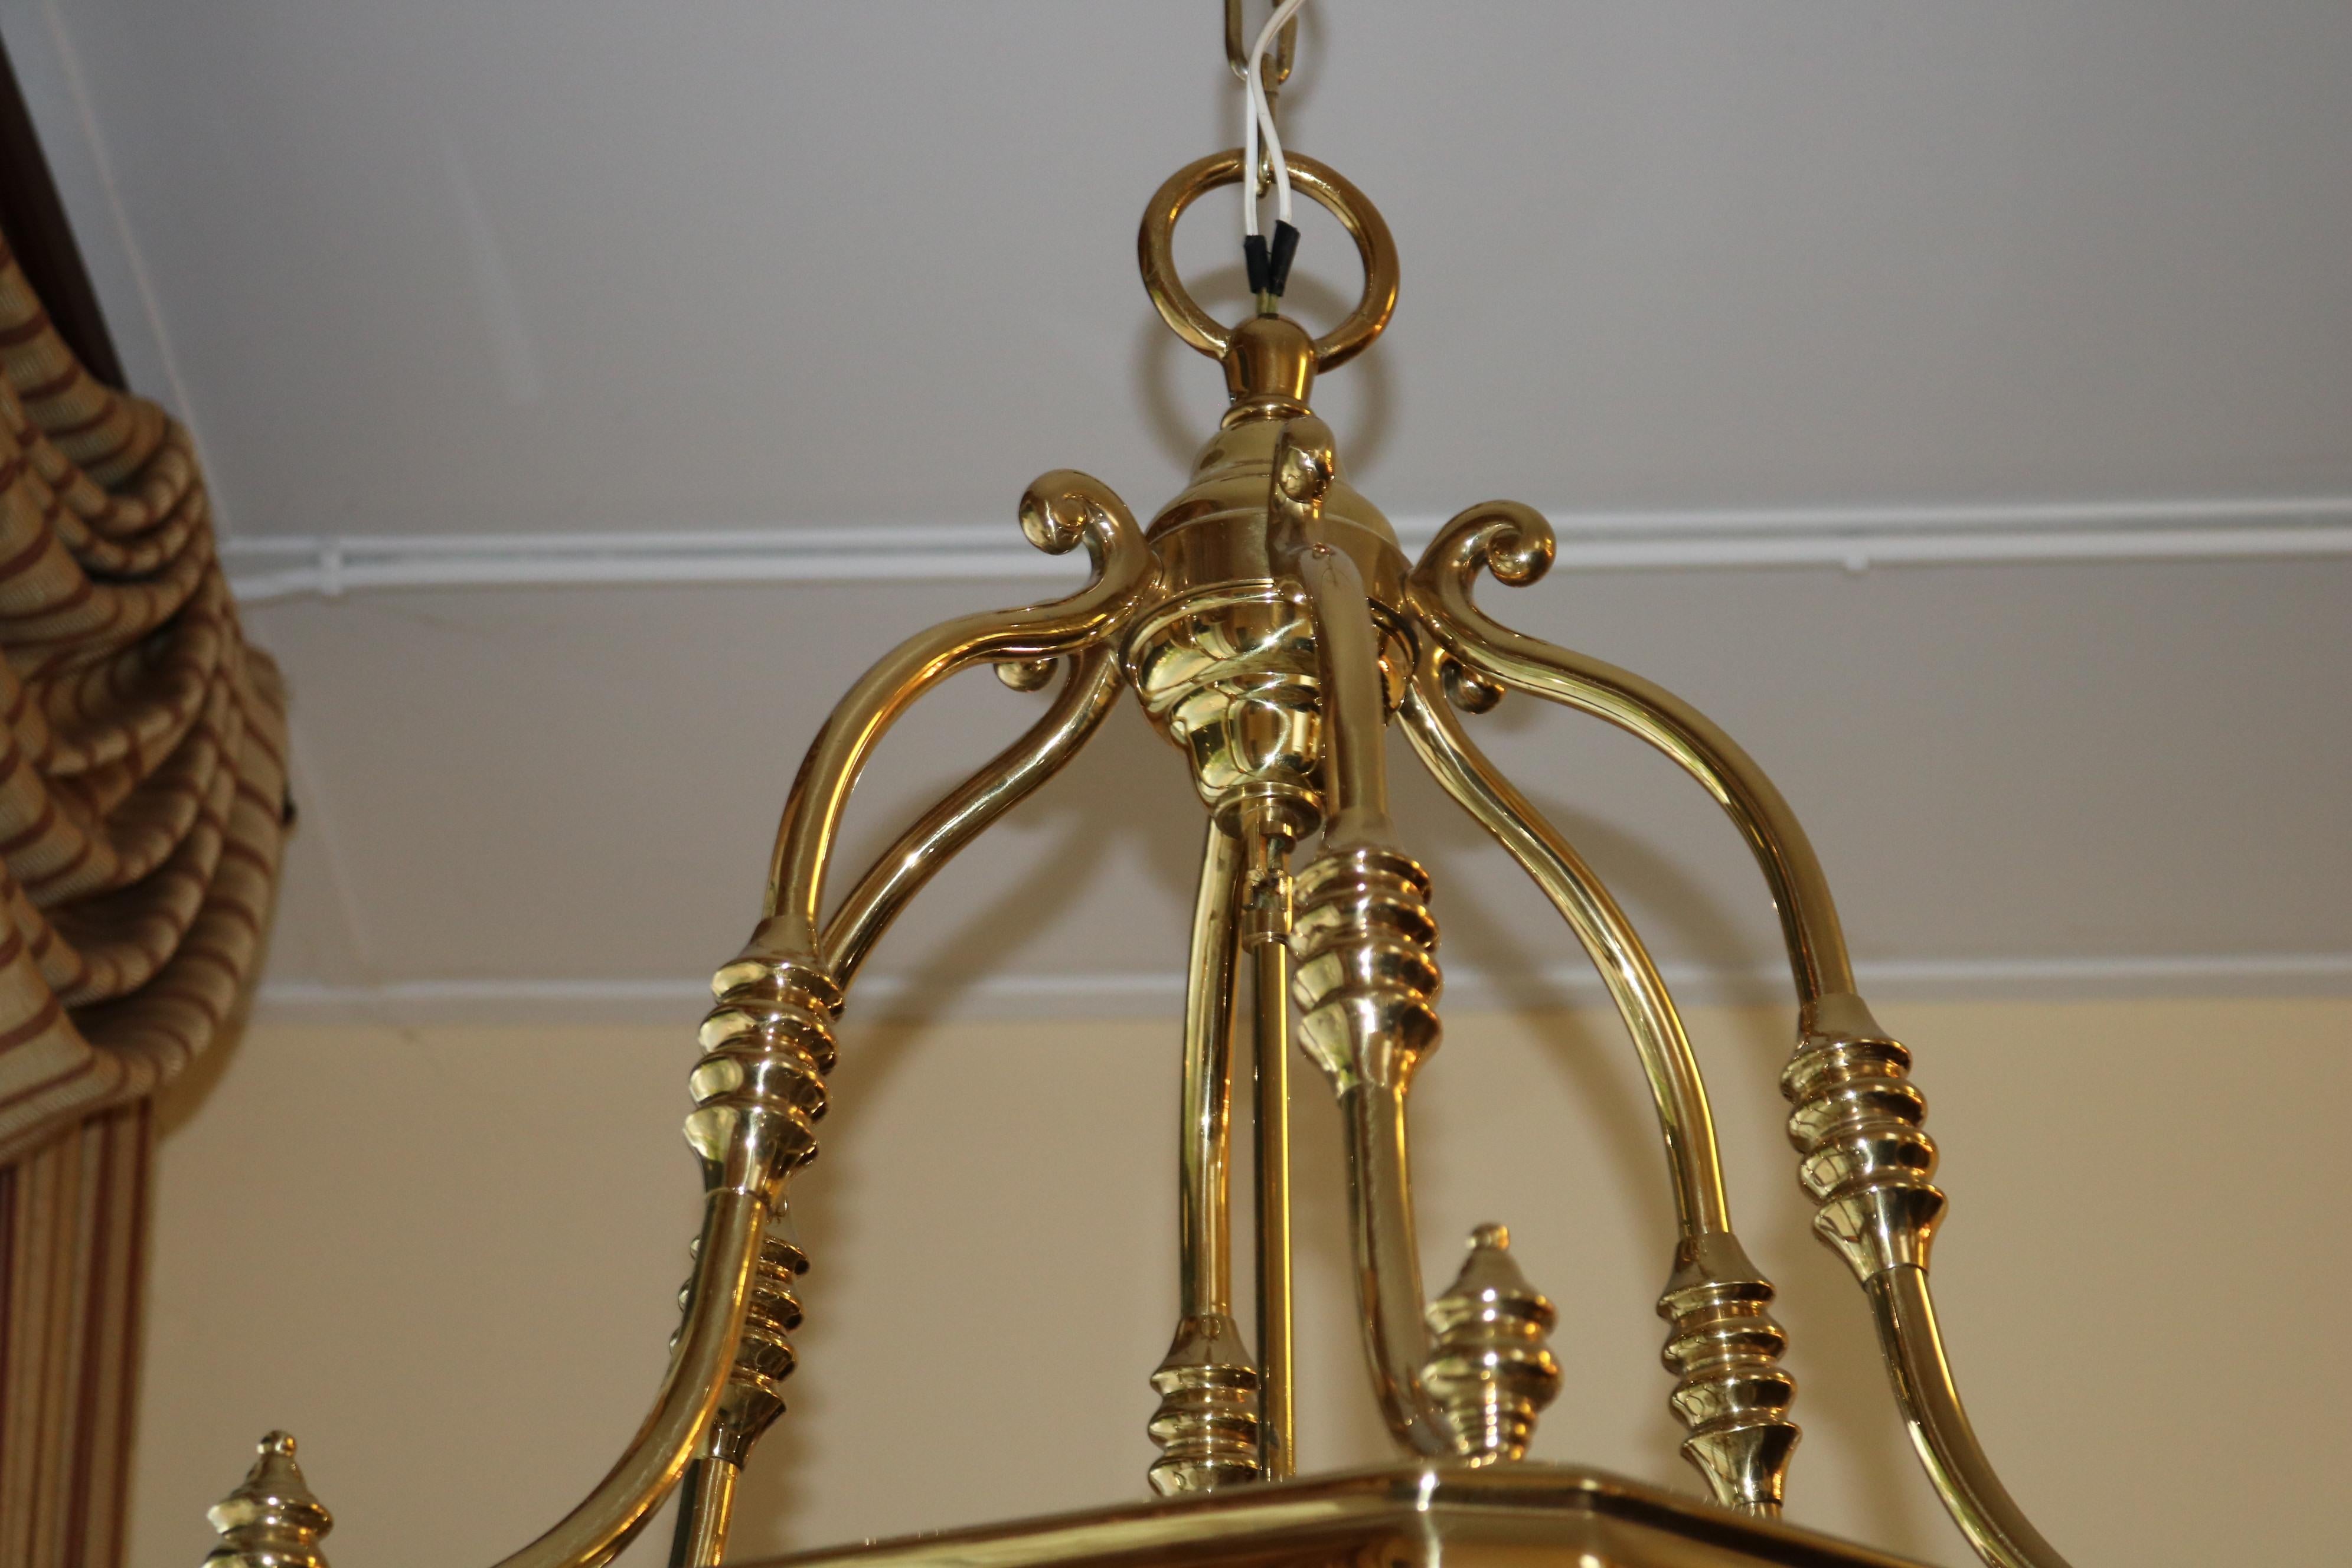 Monumental Over 4 FT Tall 12 Light Brass & Glass Chandelier Lantern 5